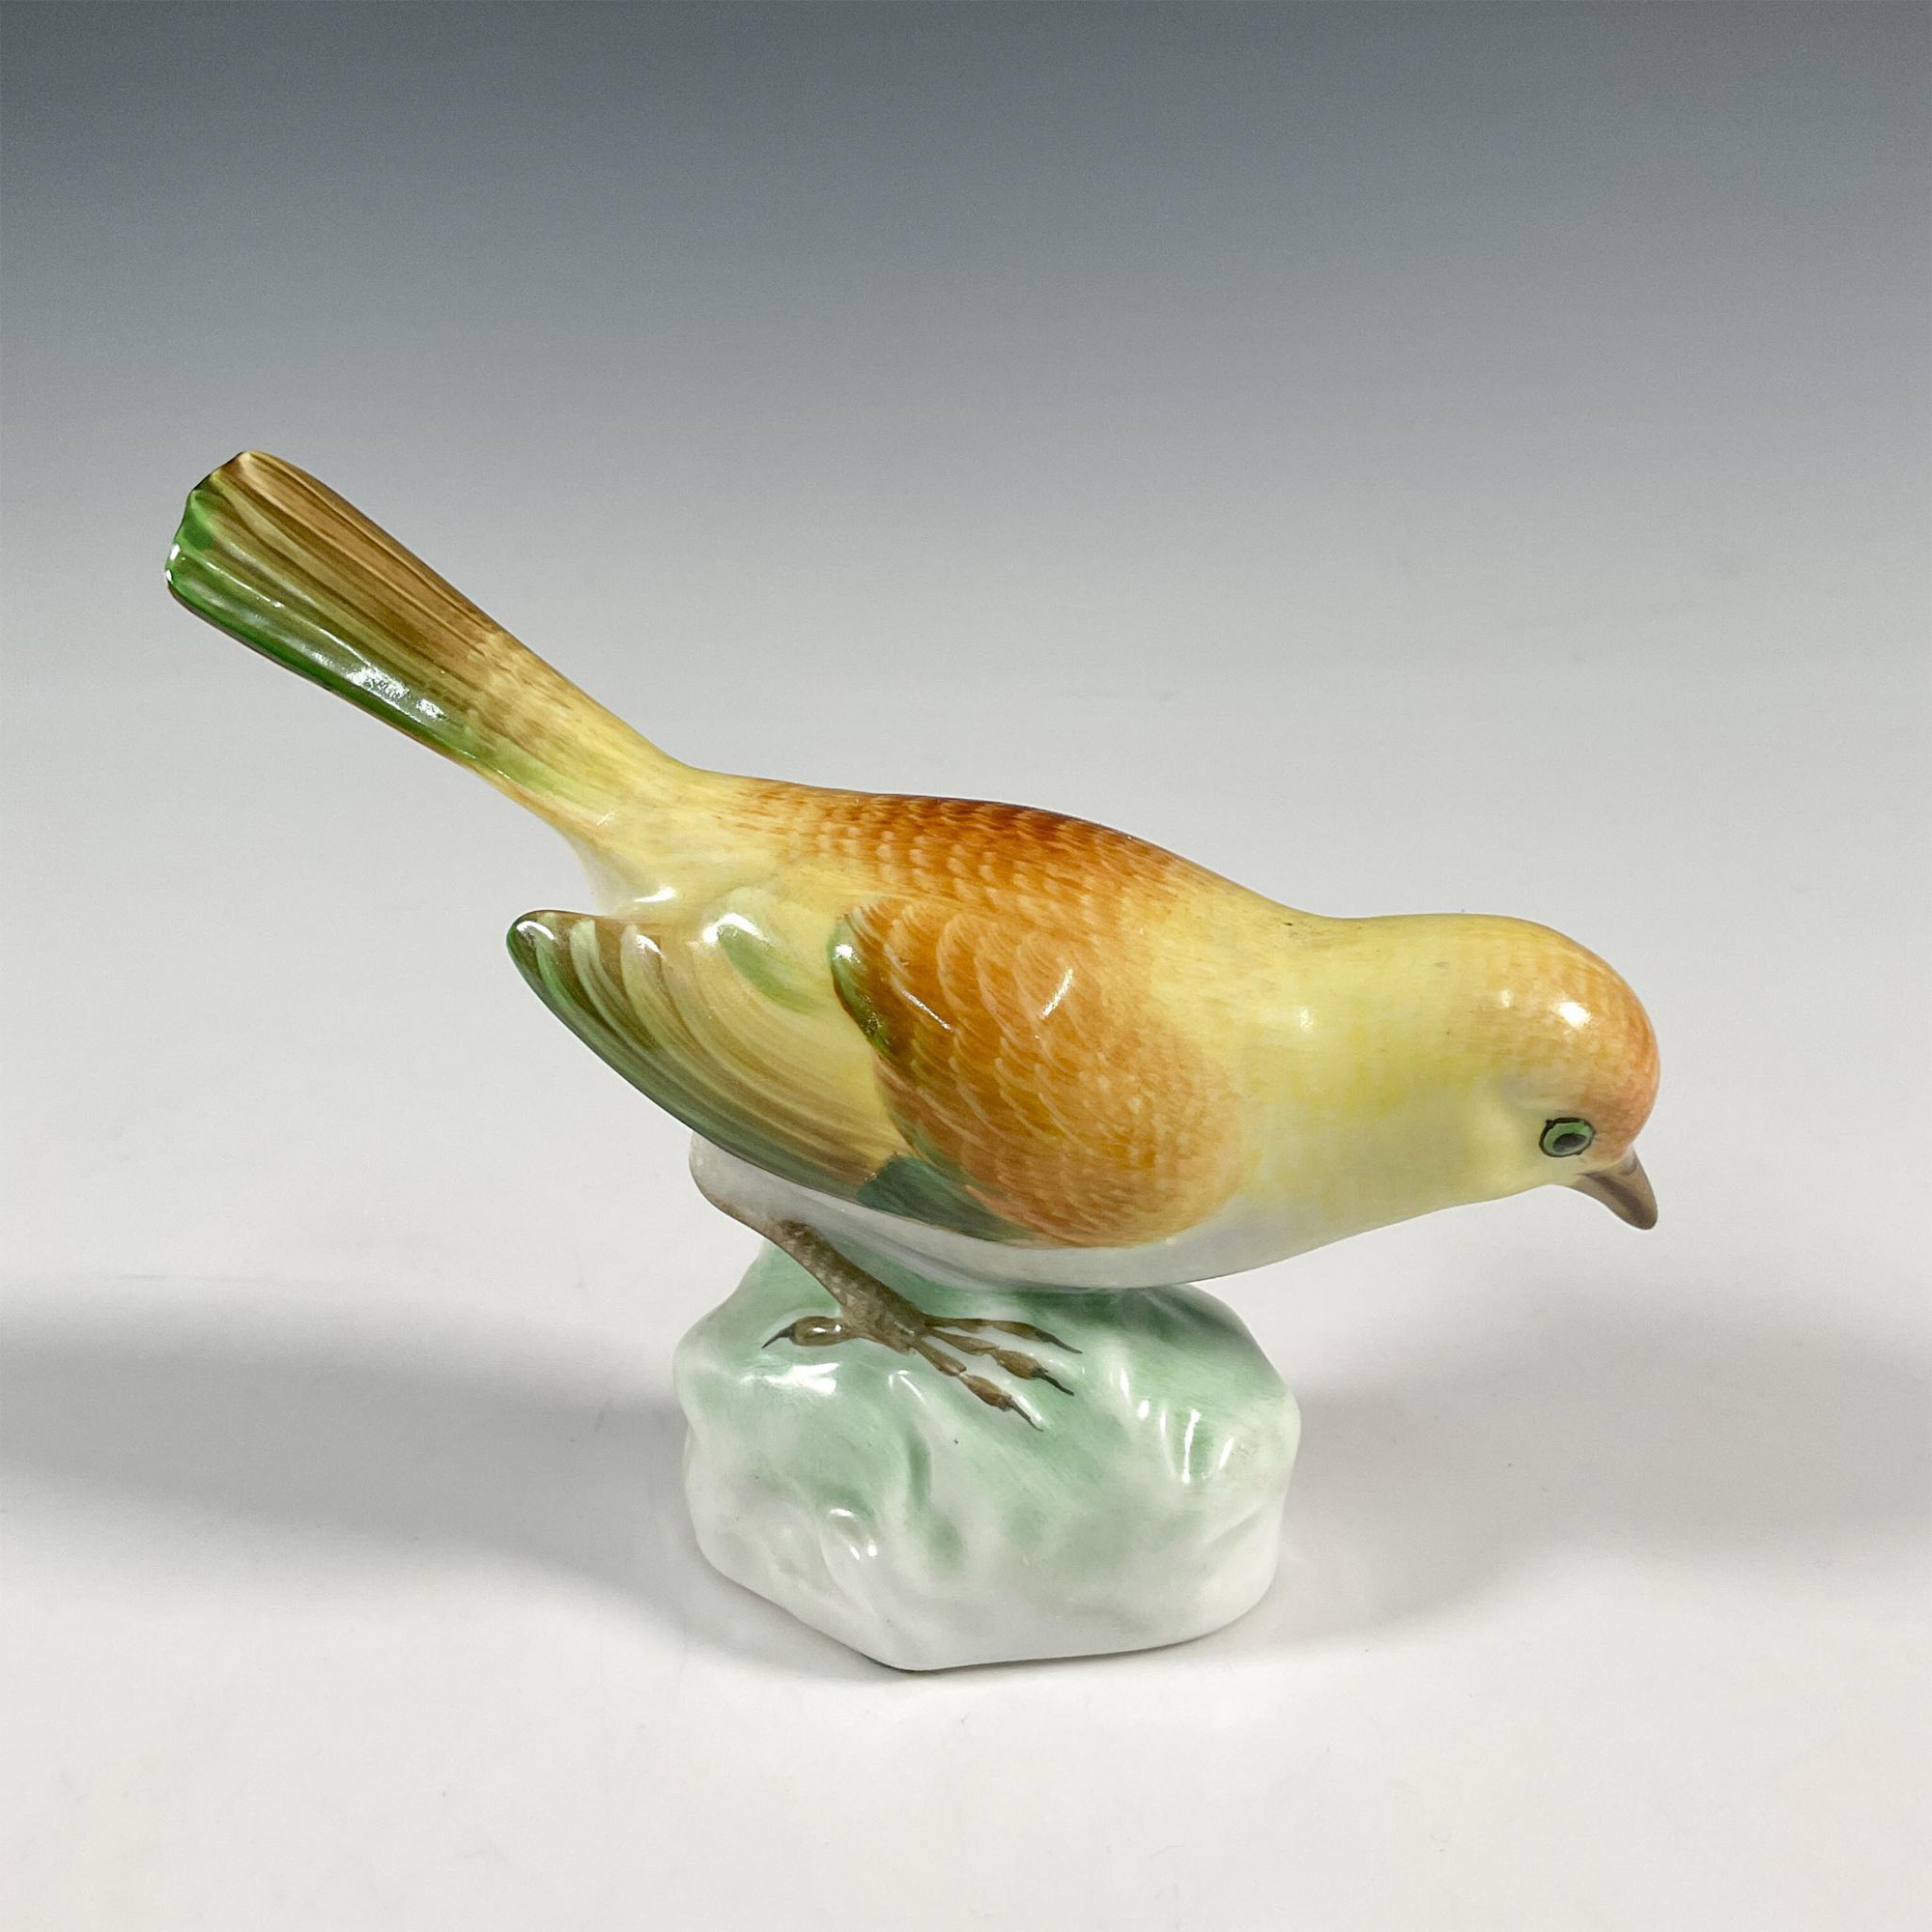 Herend Porcelain Bird Figurine, Yellow Warbler - Image 2 of 3